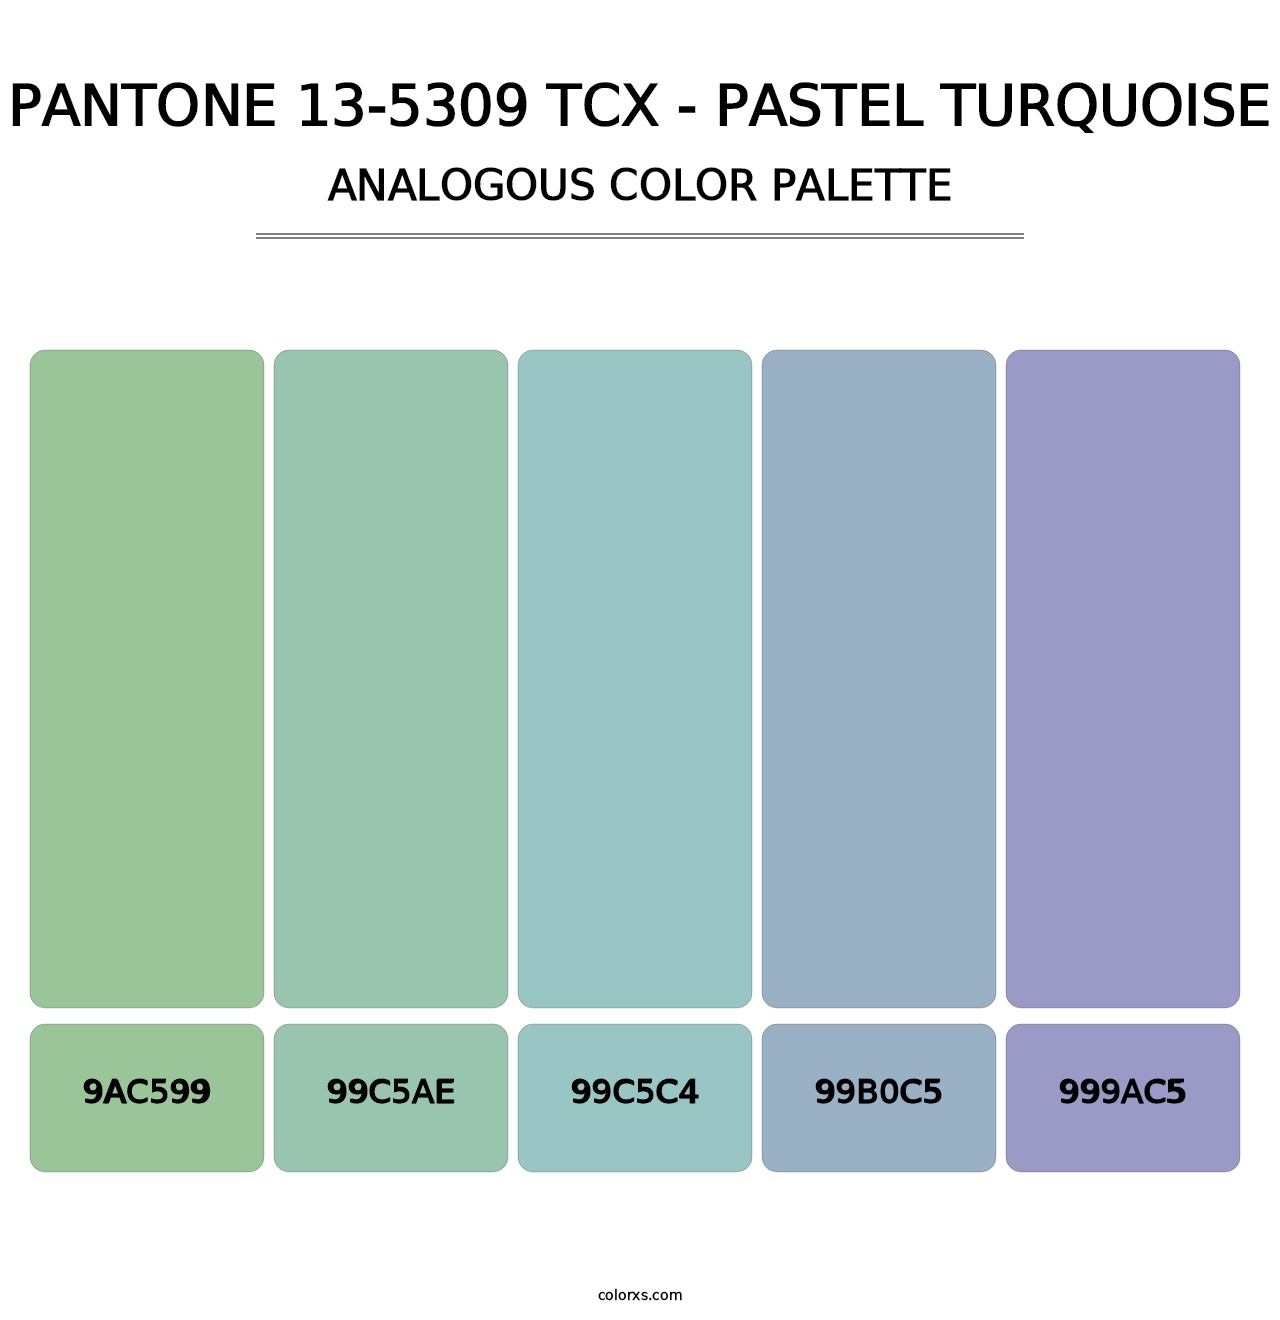 PANTONE 13-5309 TCX - Pastel Turquoise - Analogous Color Palette